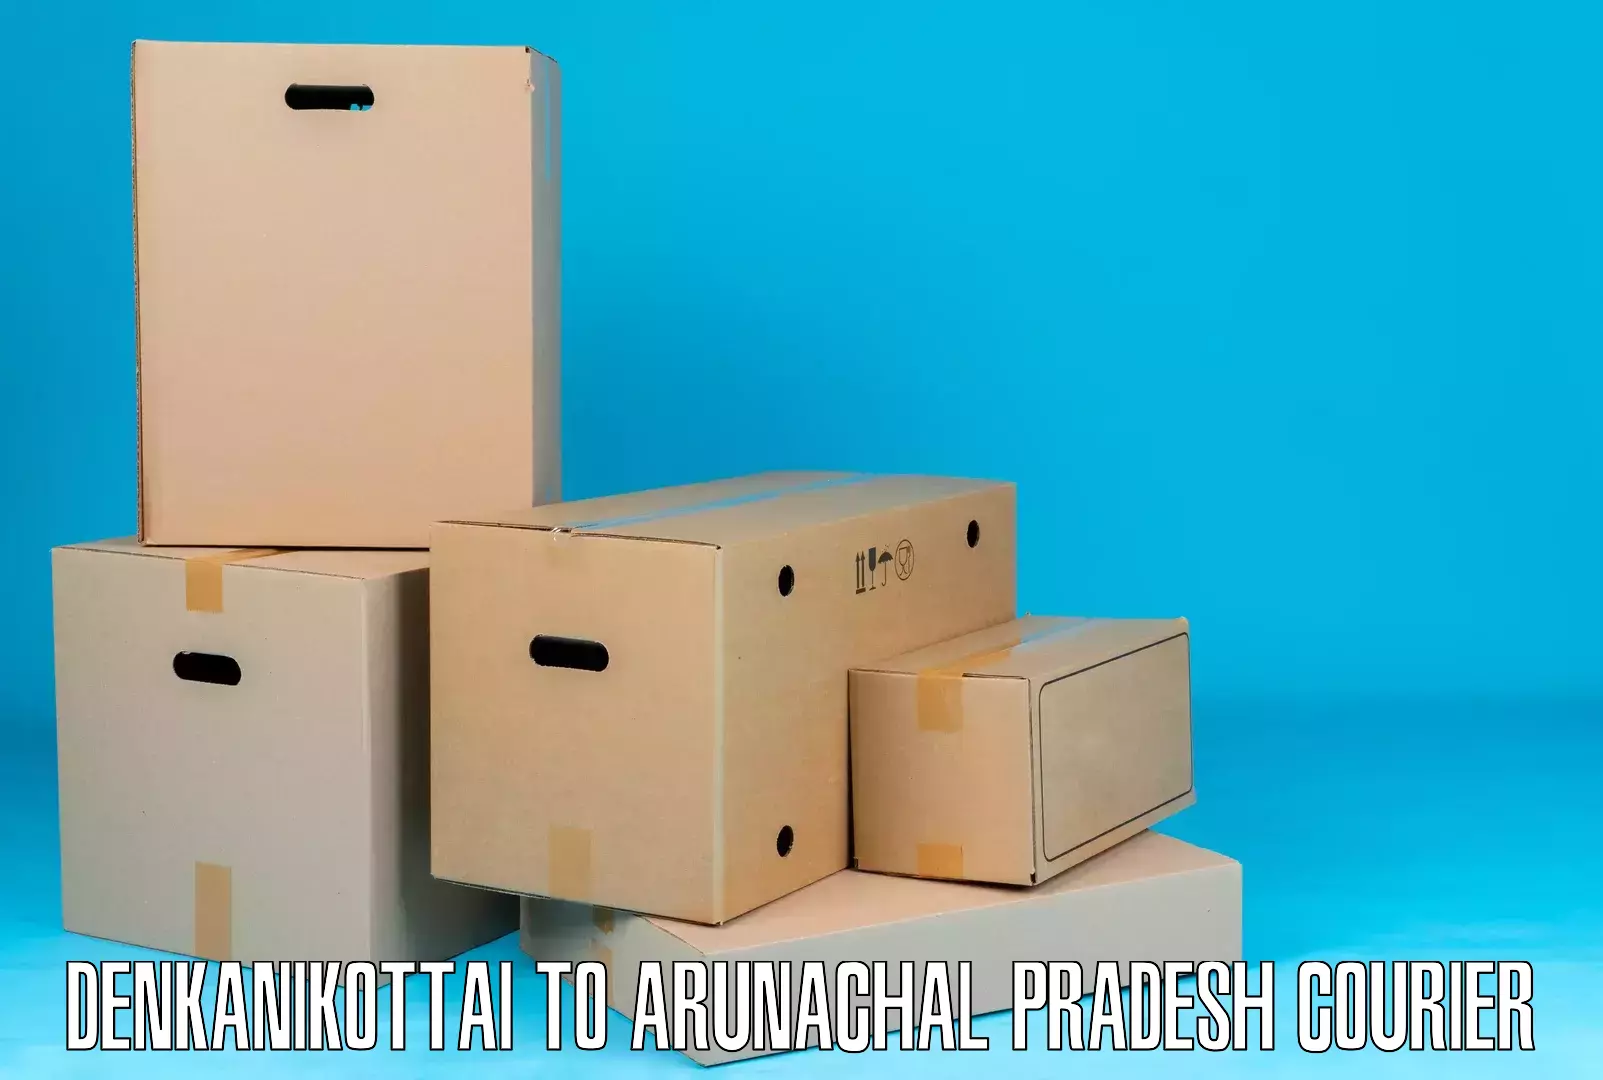 Express postal services Denkanikottai to Arunachal Pradesh